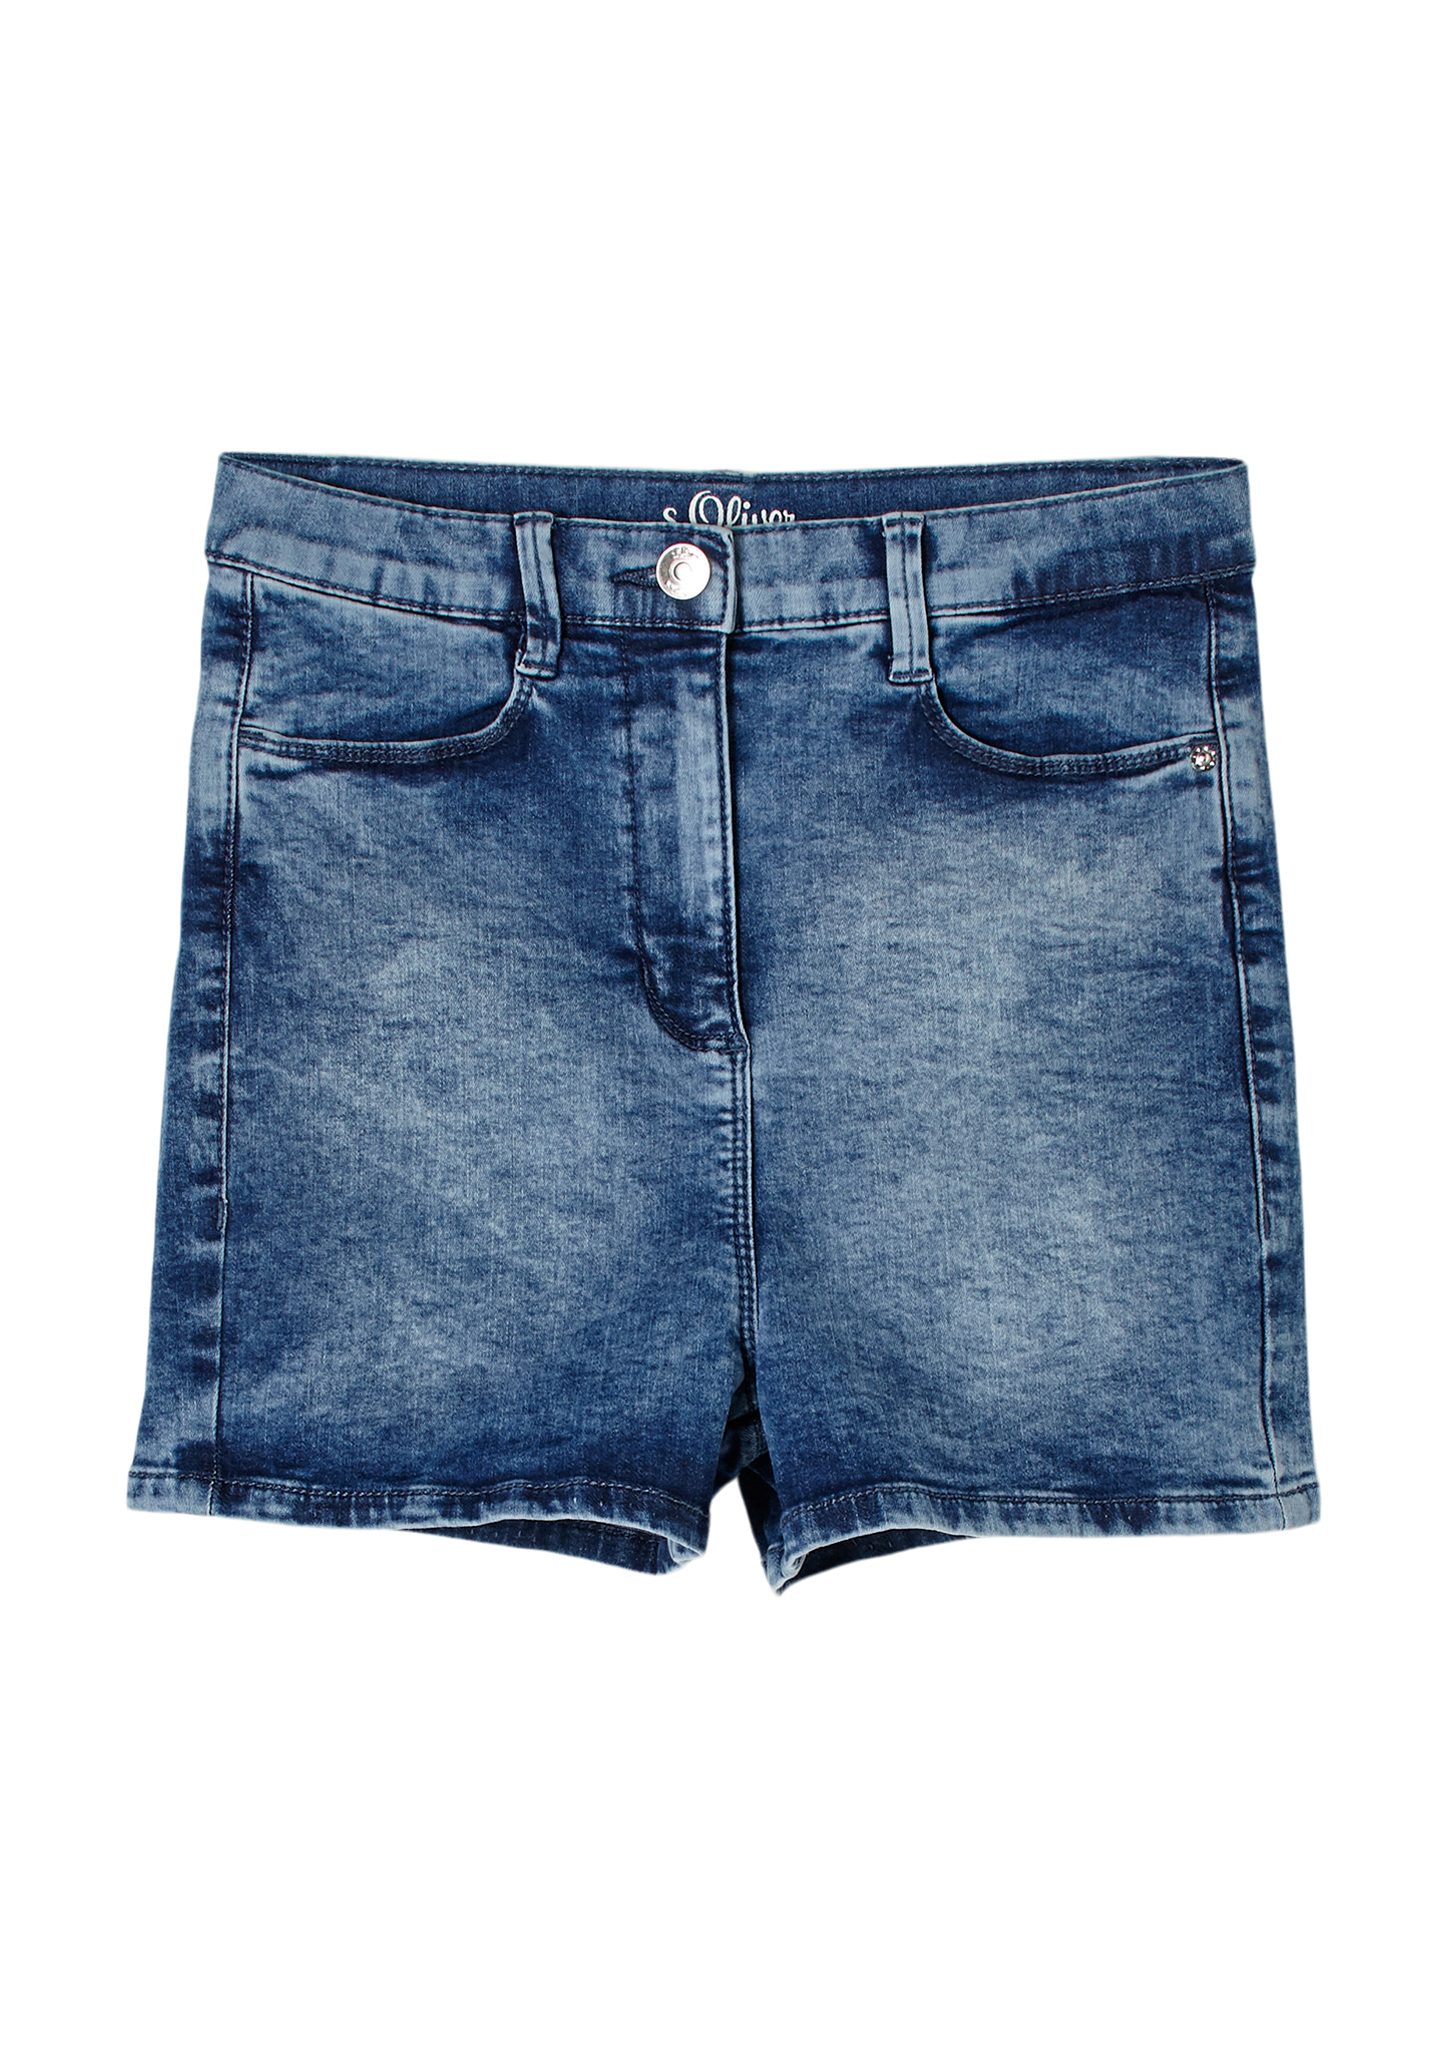 Hose s.Oliver Junior s.Oliver Jeans-Hose & Shorts